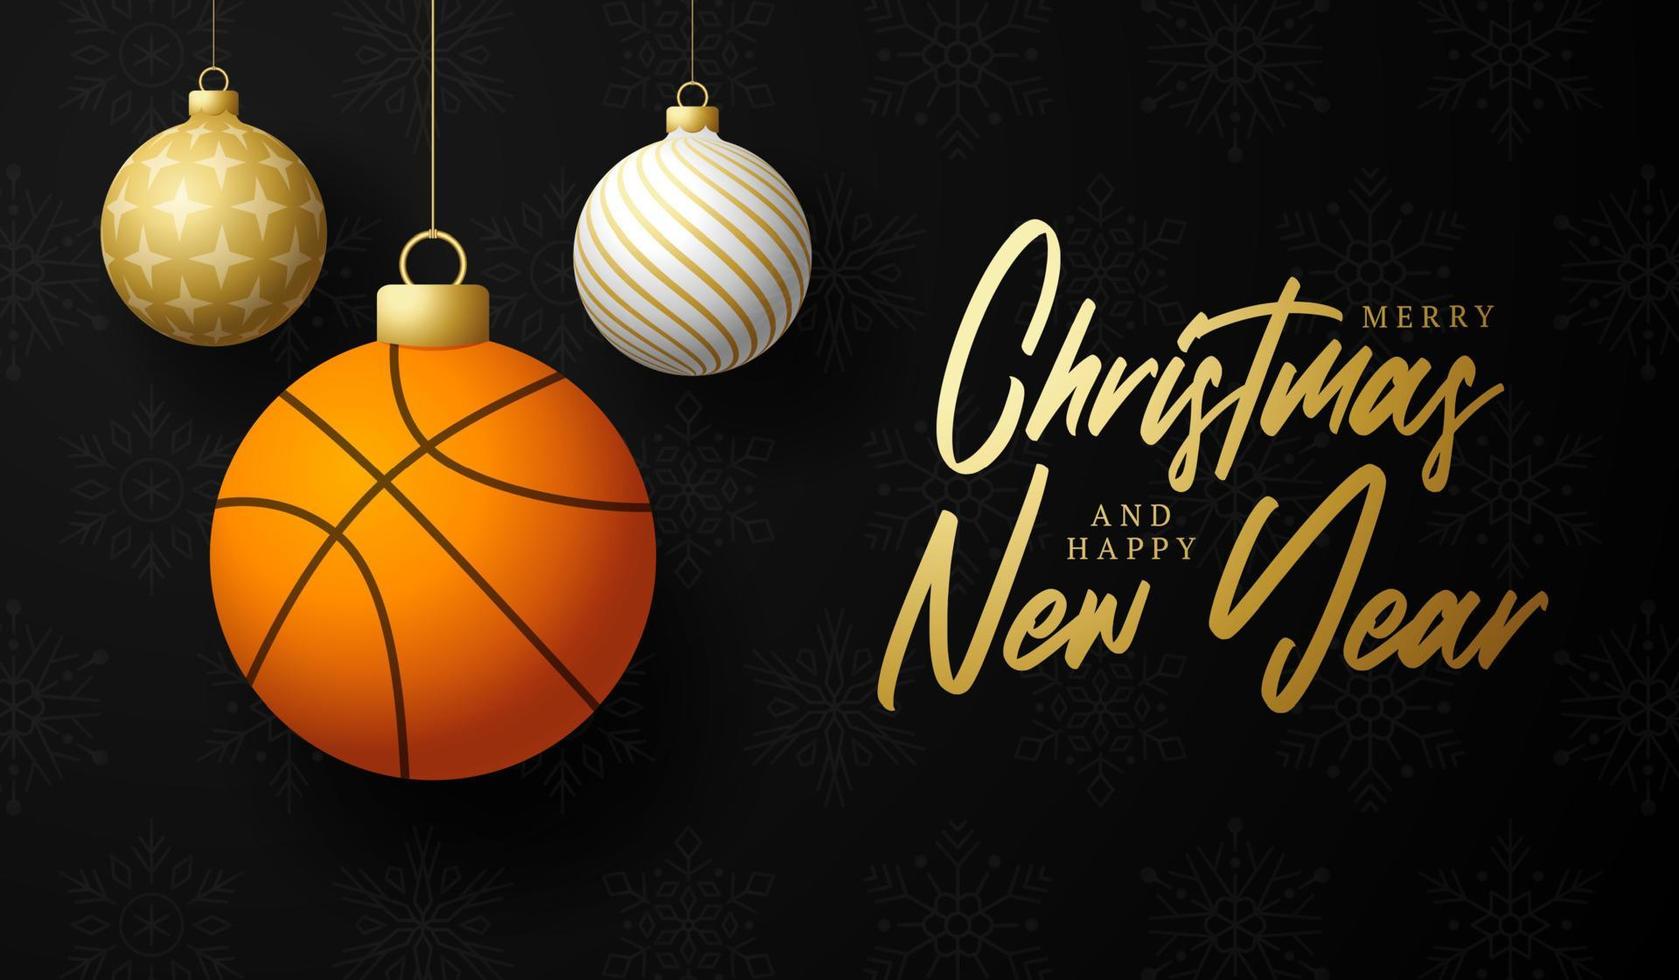 basquete, feliz Natal e feliz ano novo cartão de felicitações de esportes de luxo. bola de basquete como uma bola de Natal no fundo. ilustração vetorial. vetor